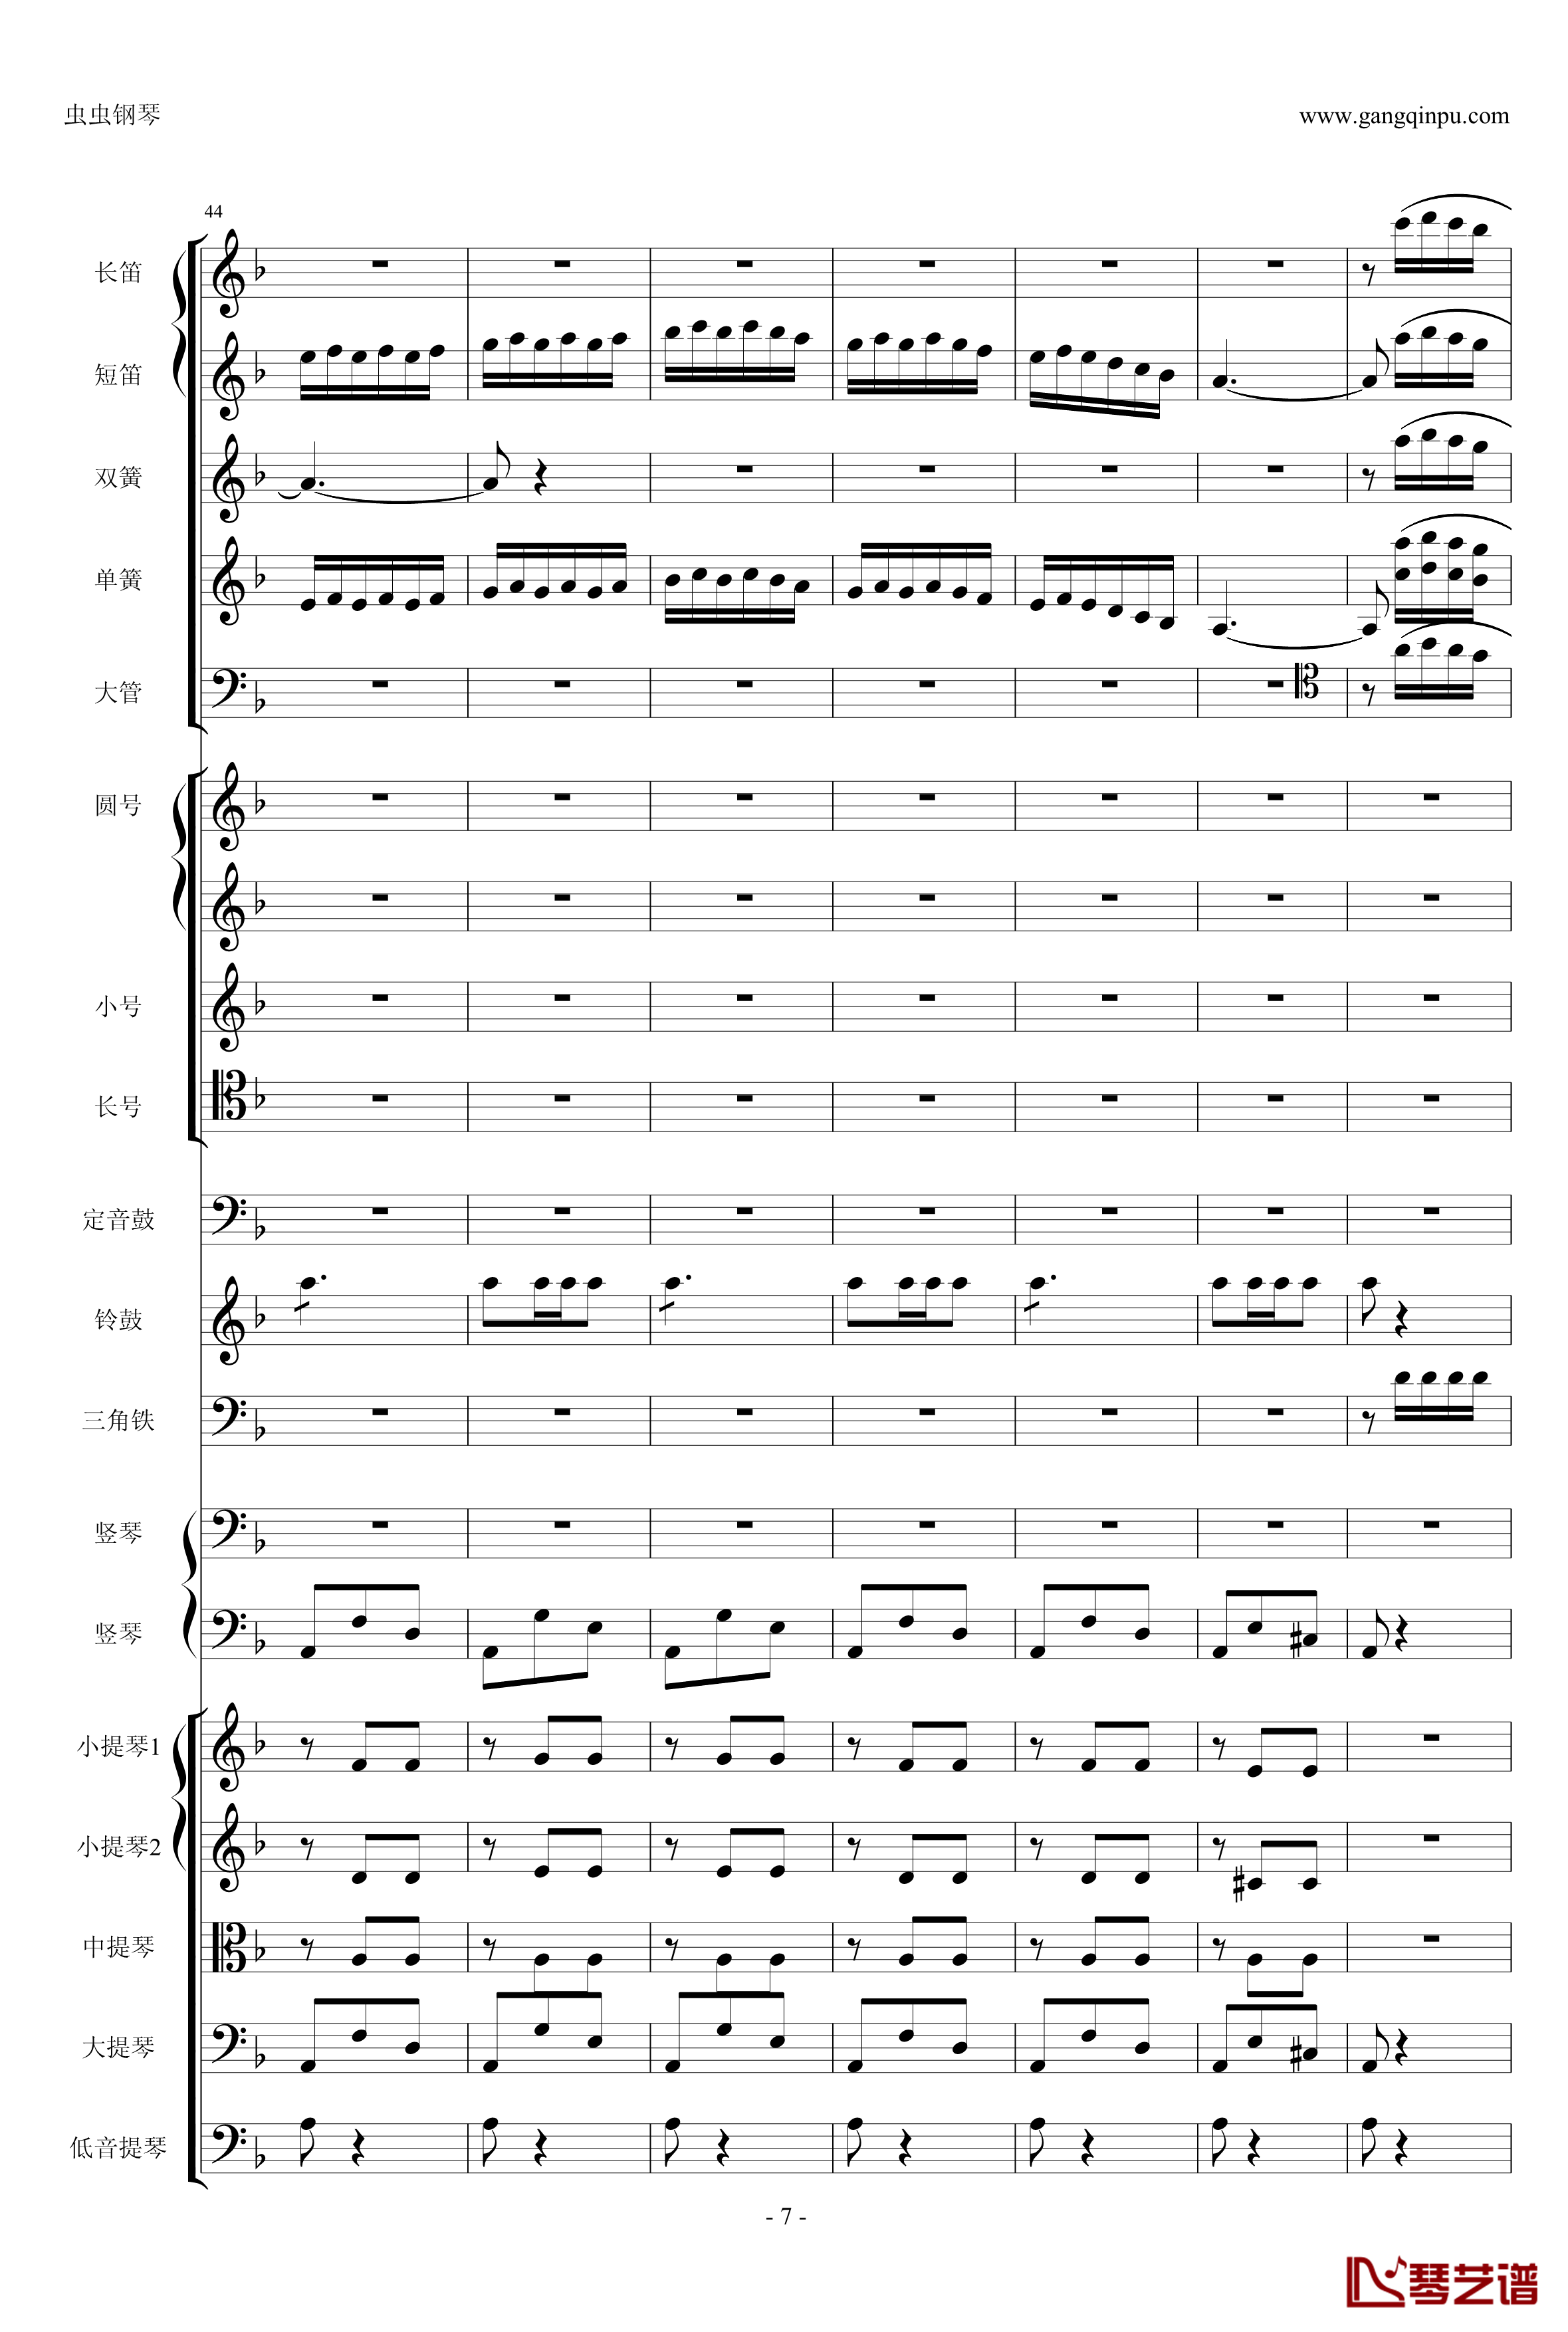 歌剧卡门选段钢琴谱-比才-Bizet- 第四幕间奏曲7